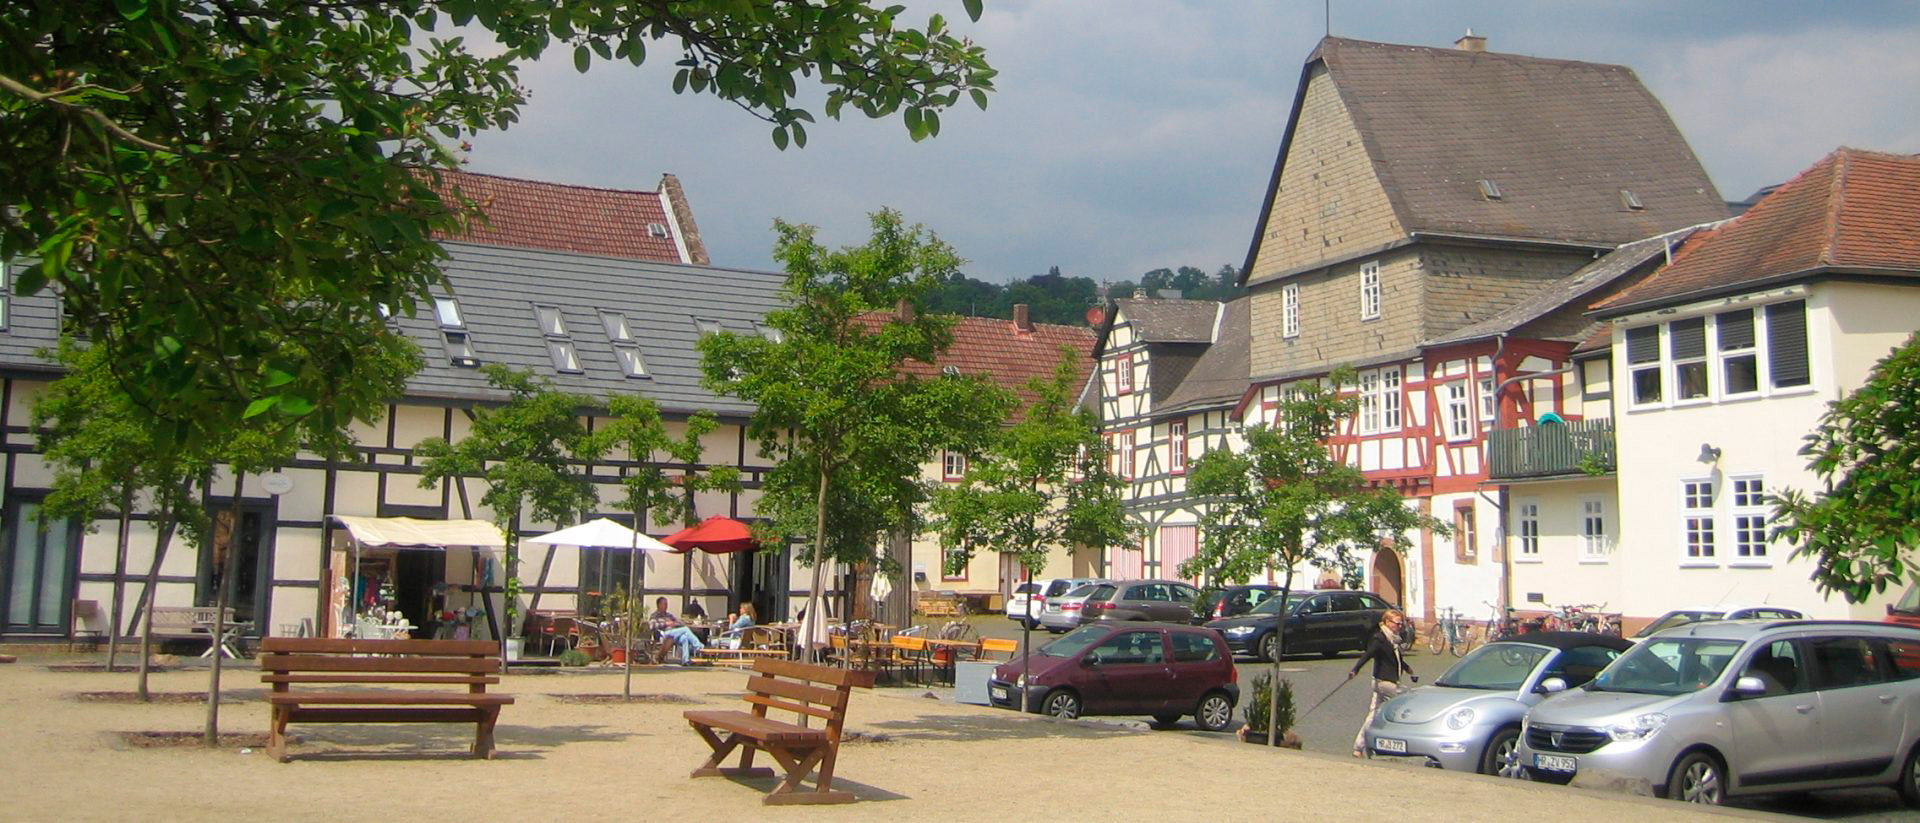 Schwanhof Marburg